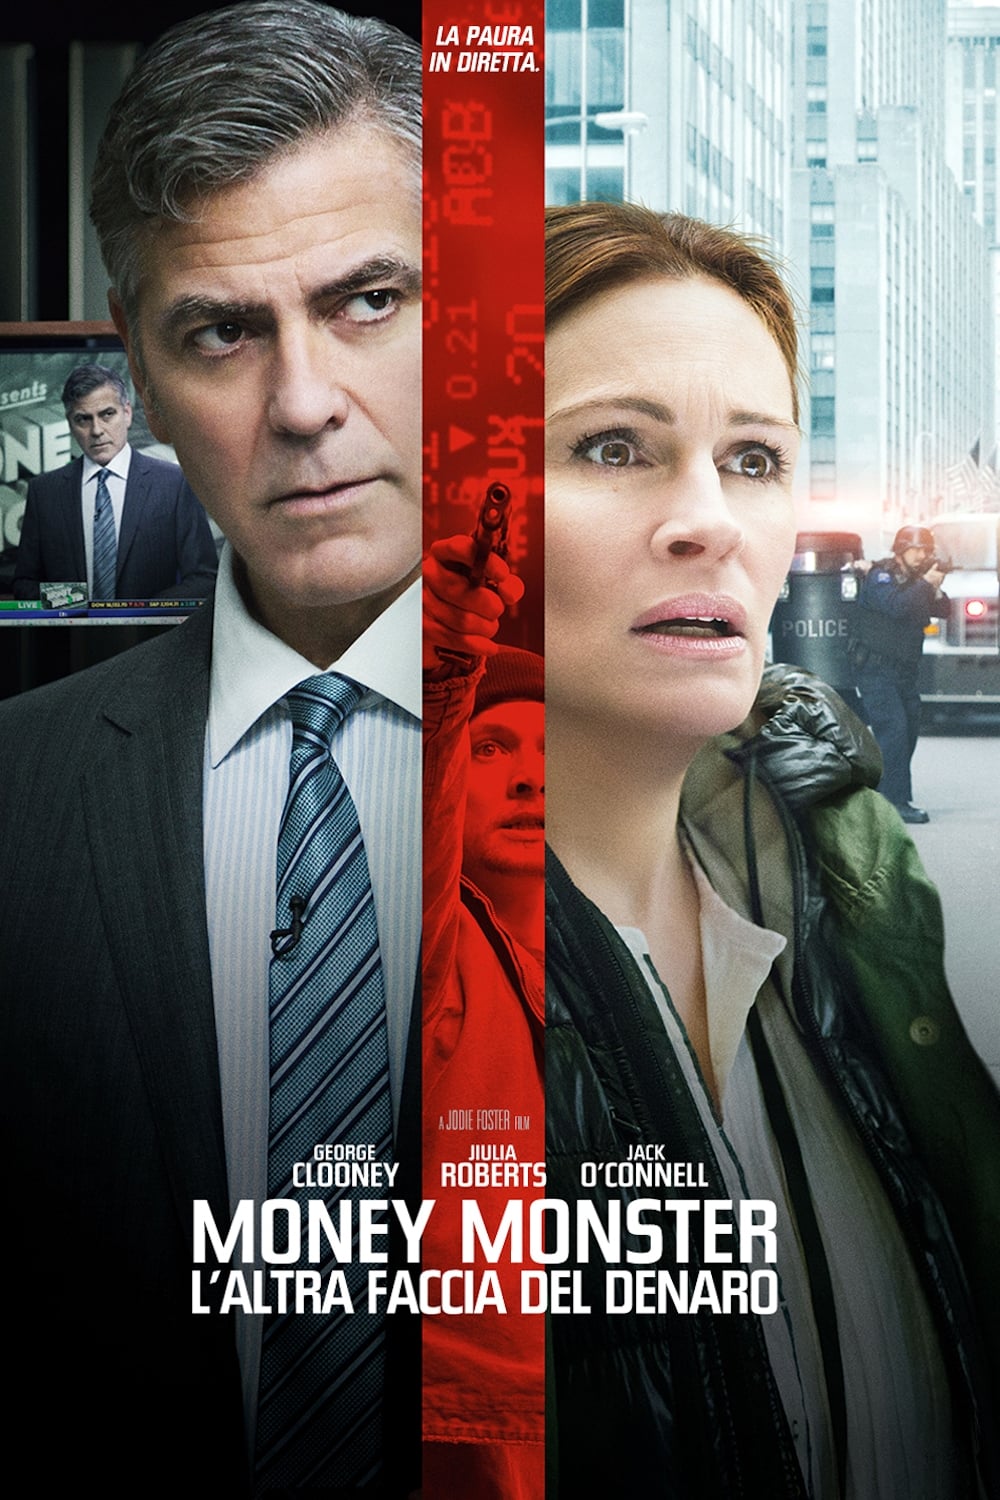 Money Monster – L’altra faccia del denaro [HD] (2016)